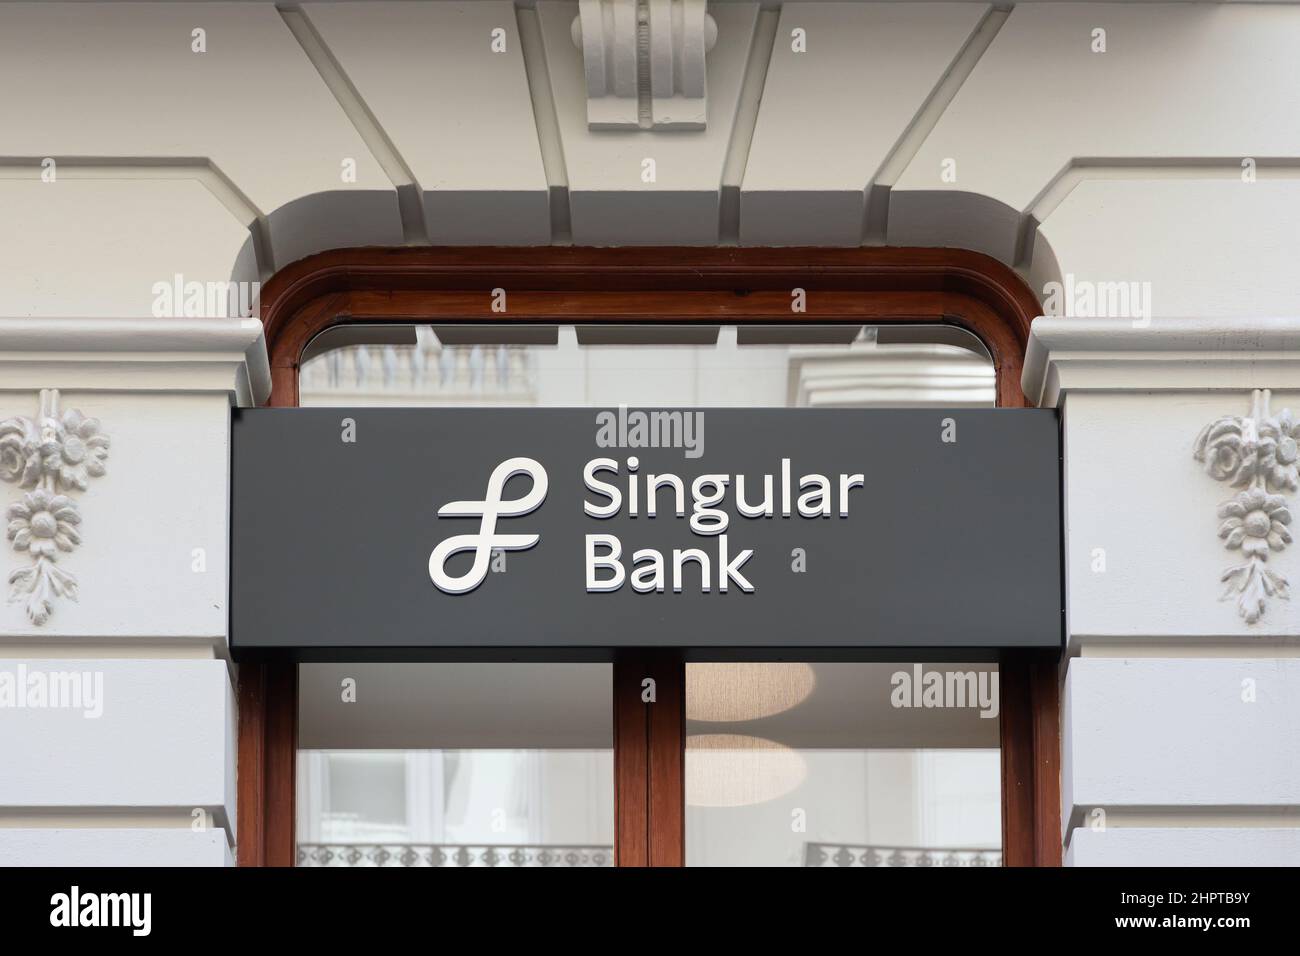 VALENCE, ESPAGNE - 22 FÉVRIER 2022 : la Ssingulier Bank est une banque d'investissement et une société de services financiers espagnoles Banque D'Images